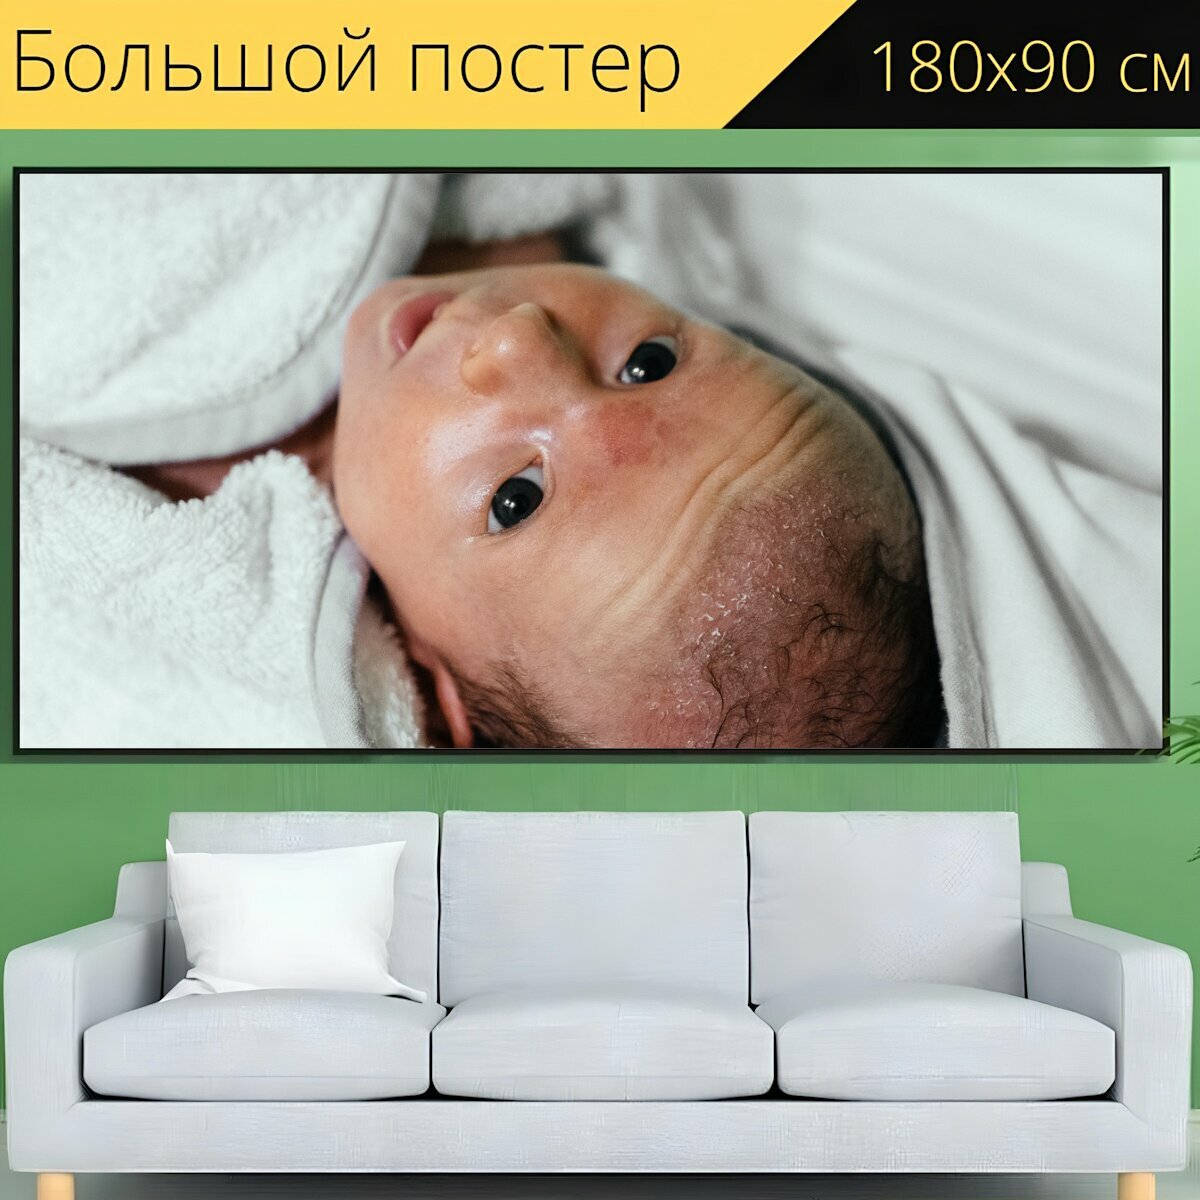 Большой постер "Детка, новорожденный, ребенок" 180 x 90 см. для интерьера